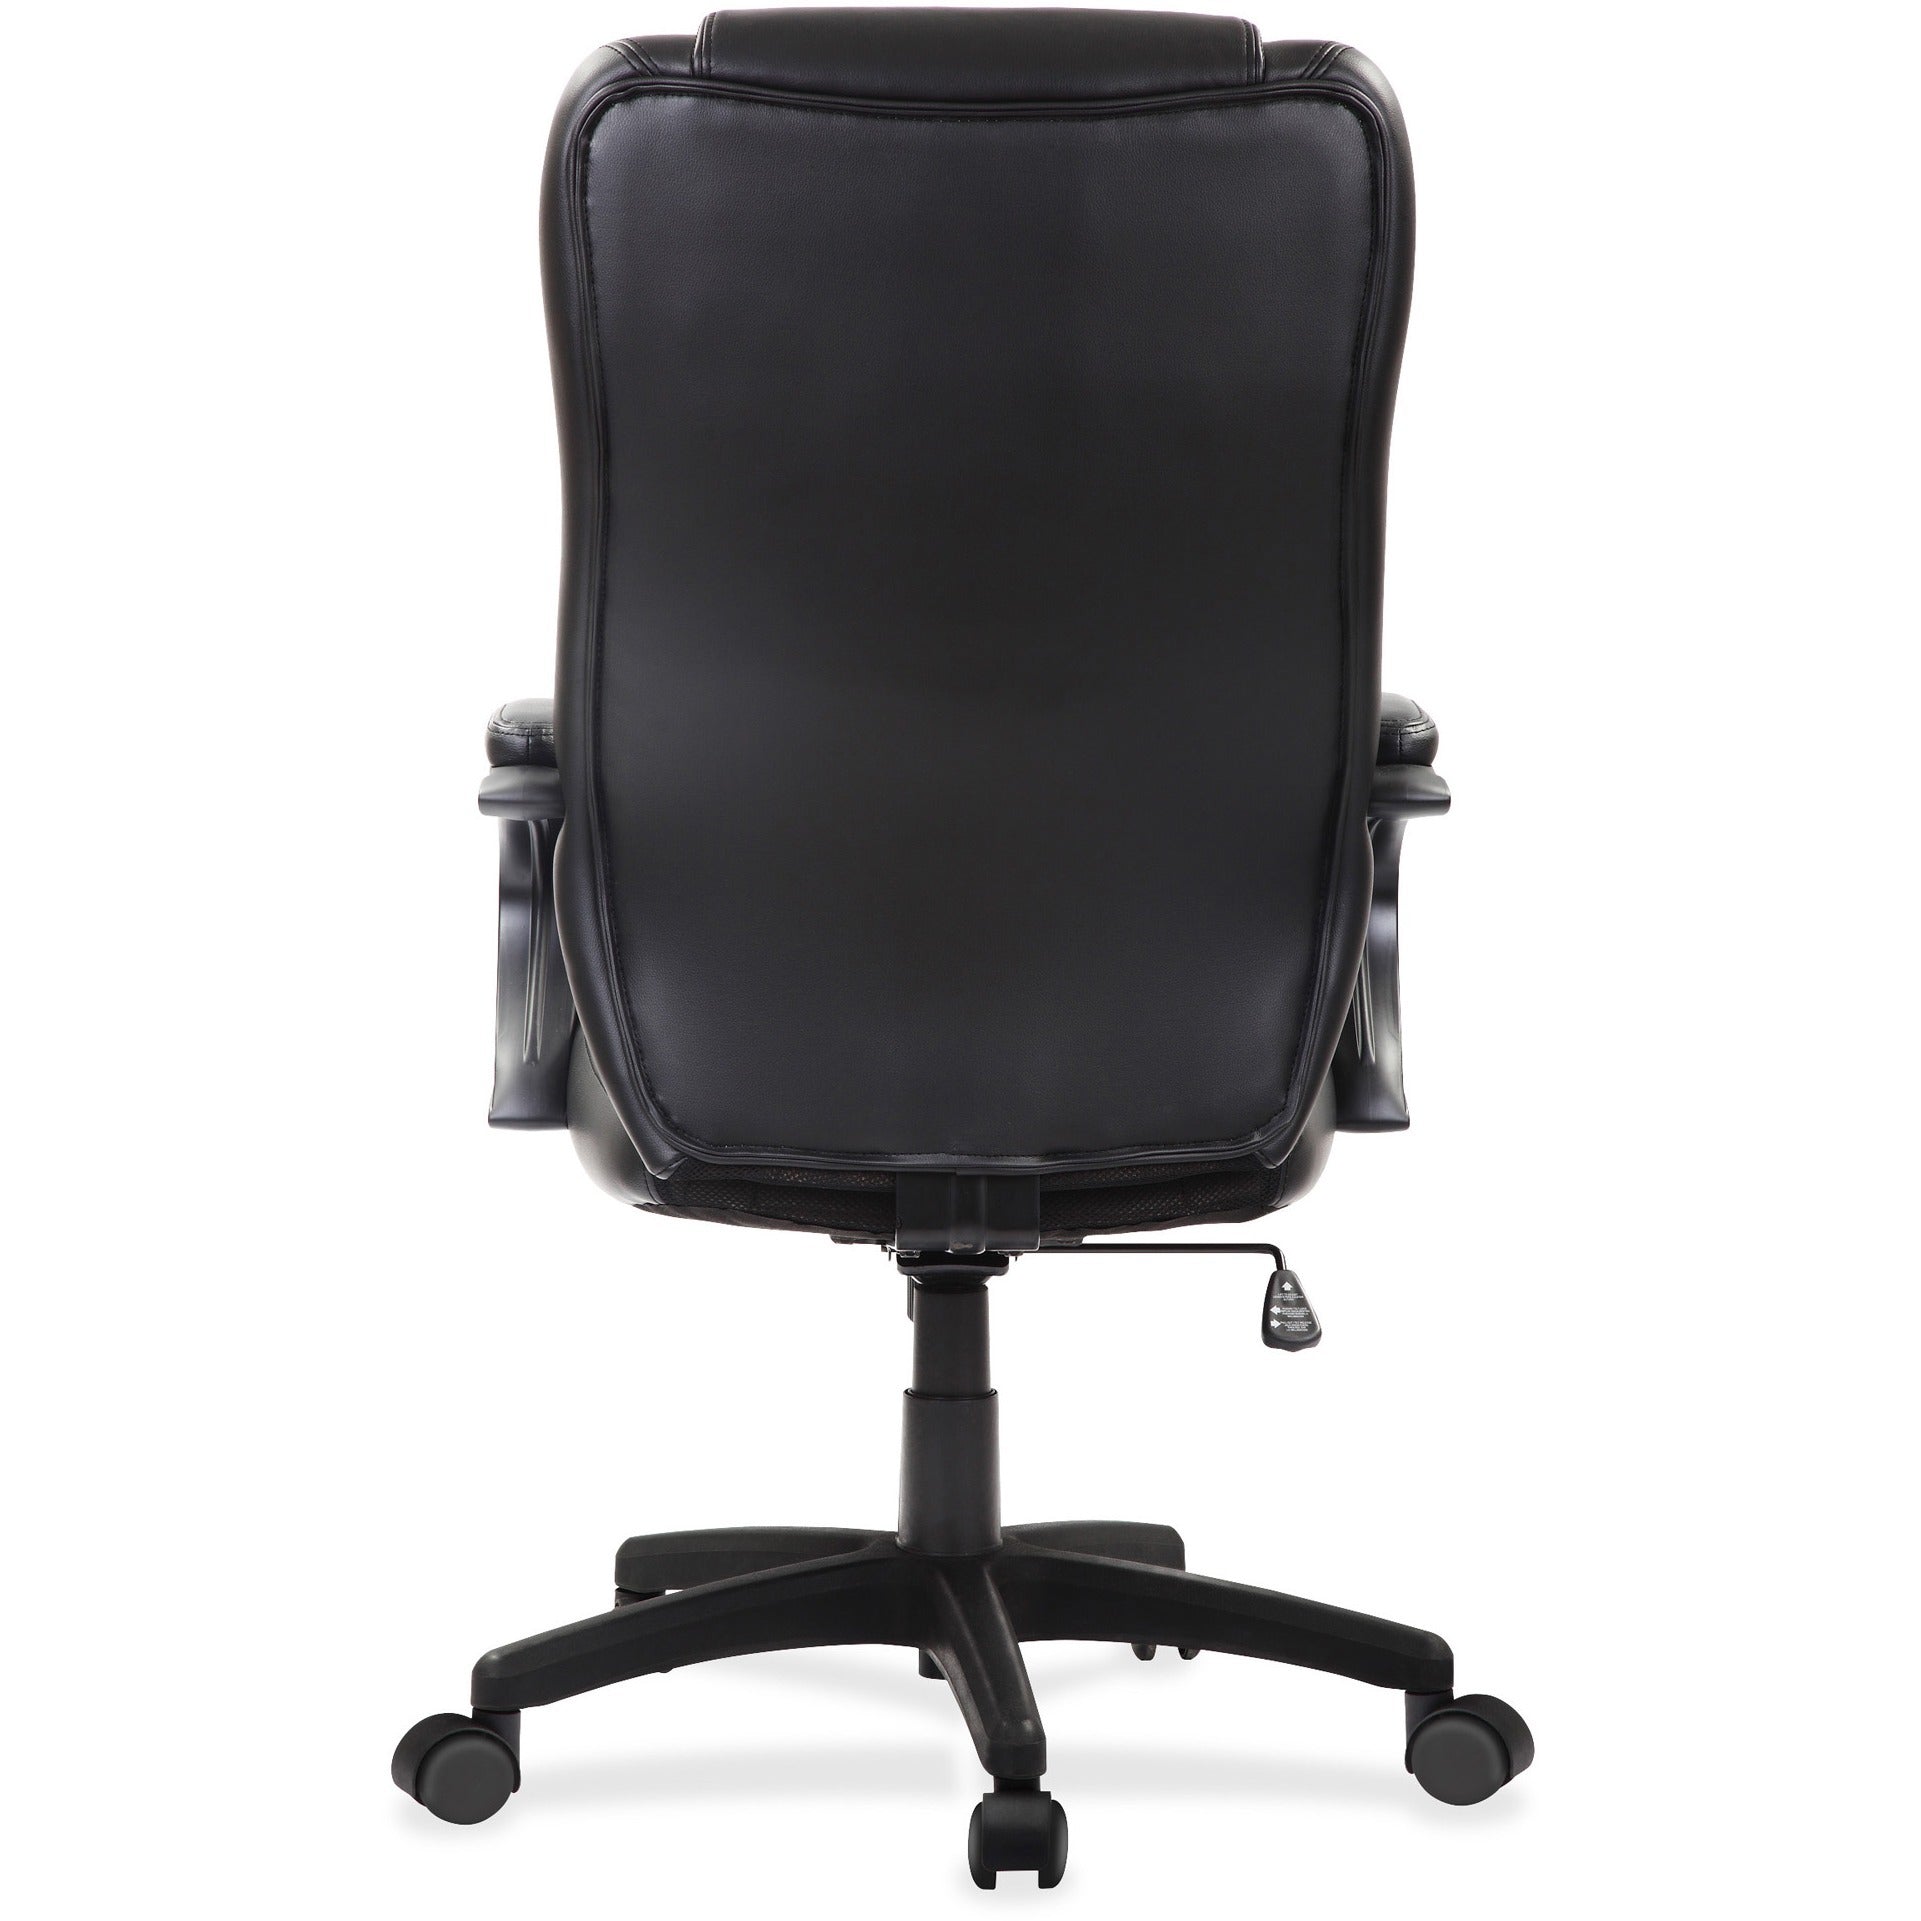 eurotech-pembroke-mid-back-executive-chair-black-bonded-leather-seat-black-bonded-leather-back-high-back-5-star-base-1-each_eutle521 - 4